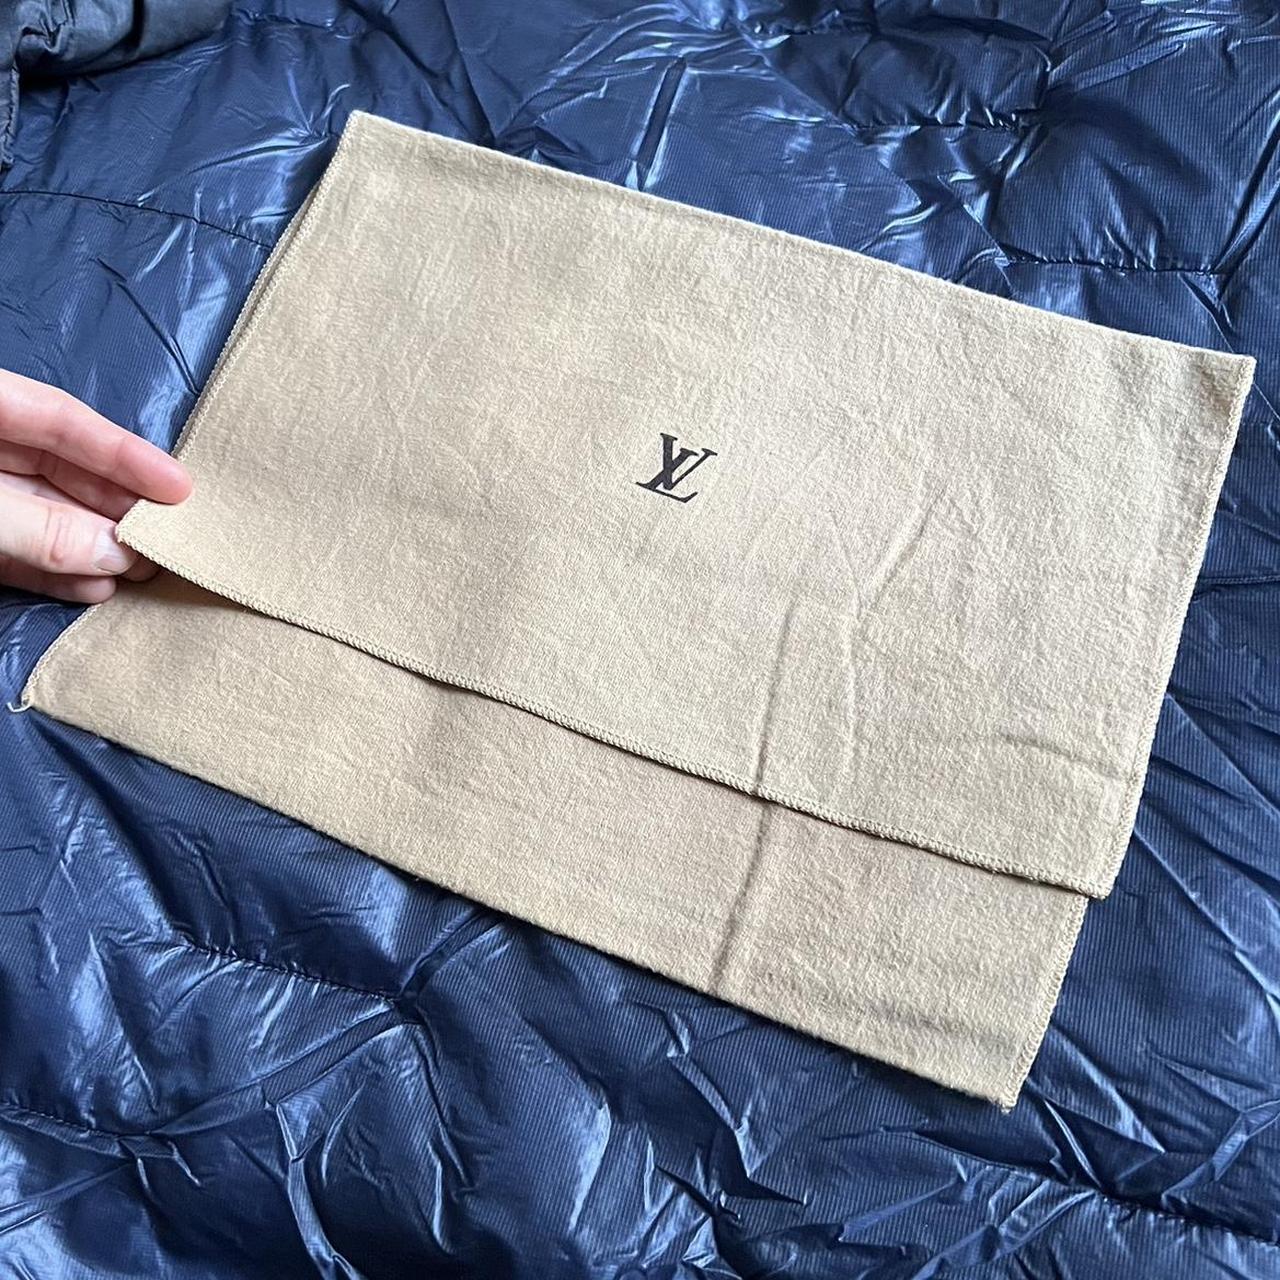 Louis Vuitton Designer Boxes, Paper Bags, Dust - Depop